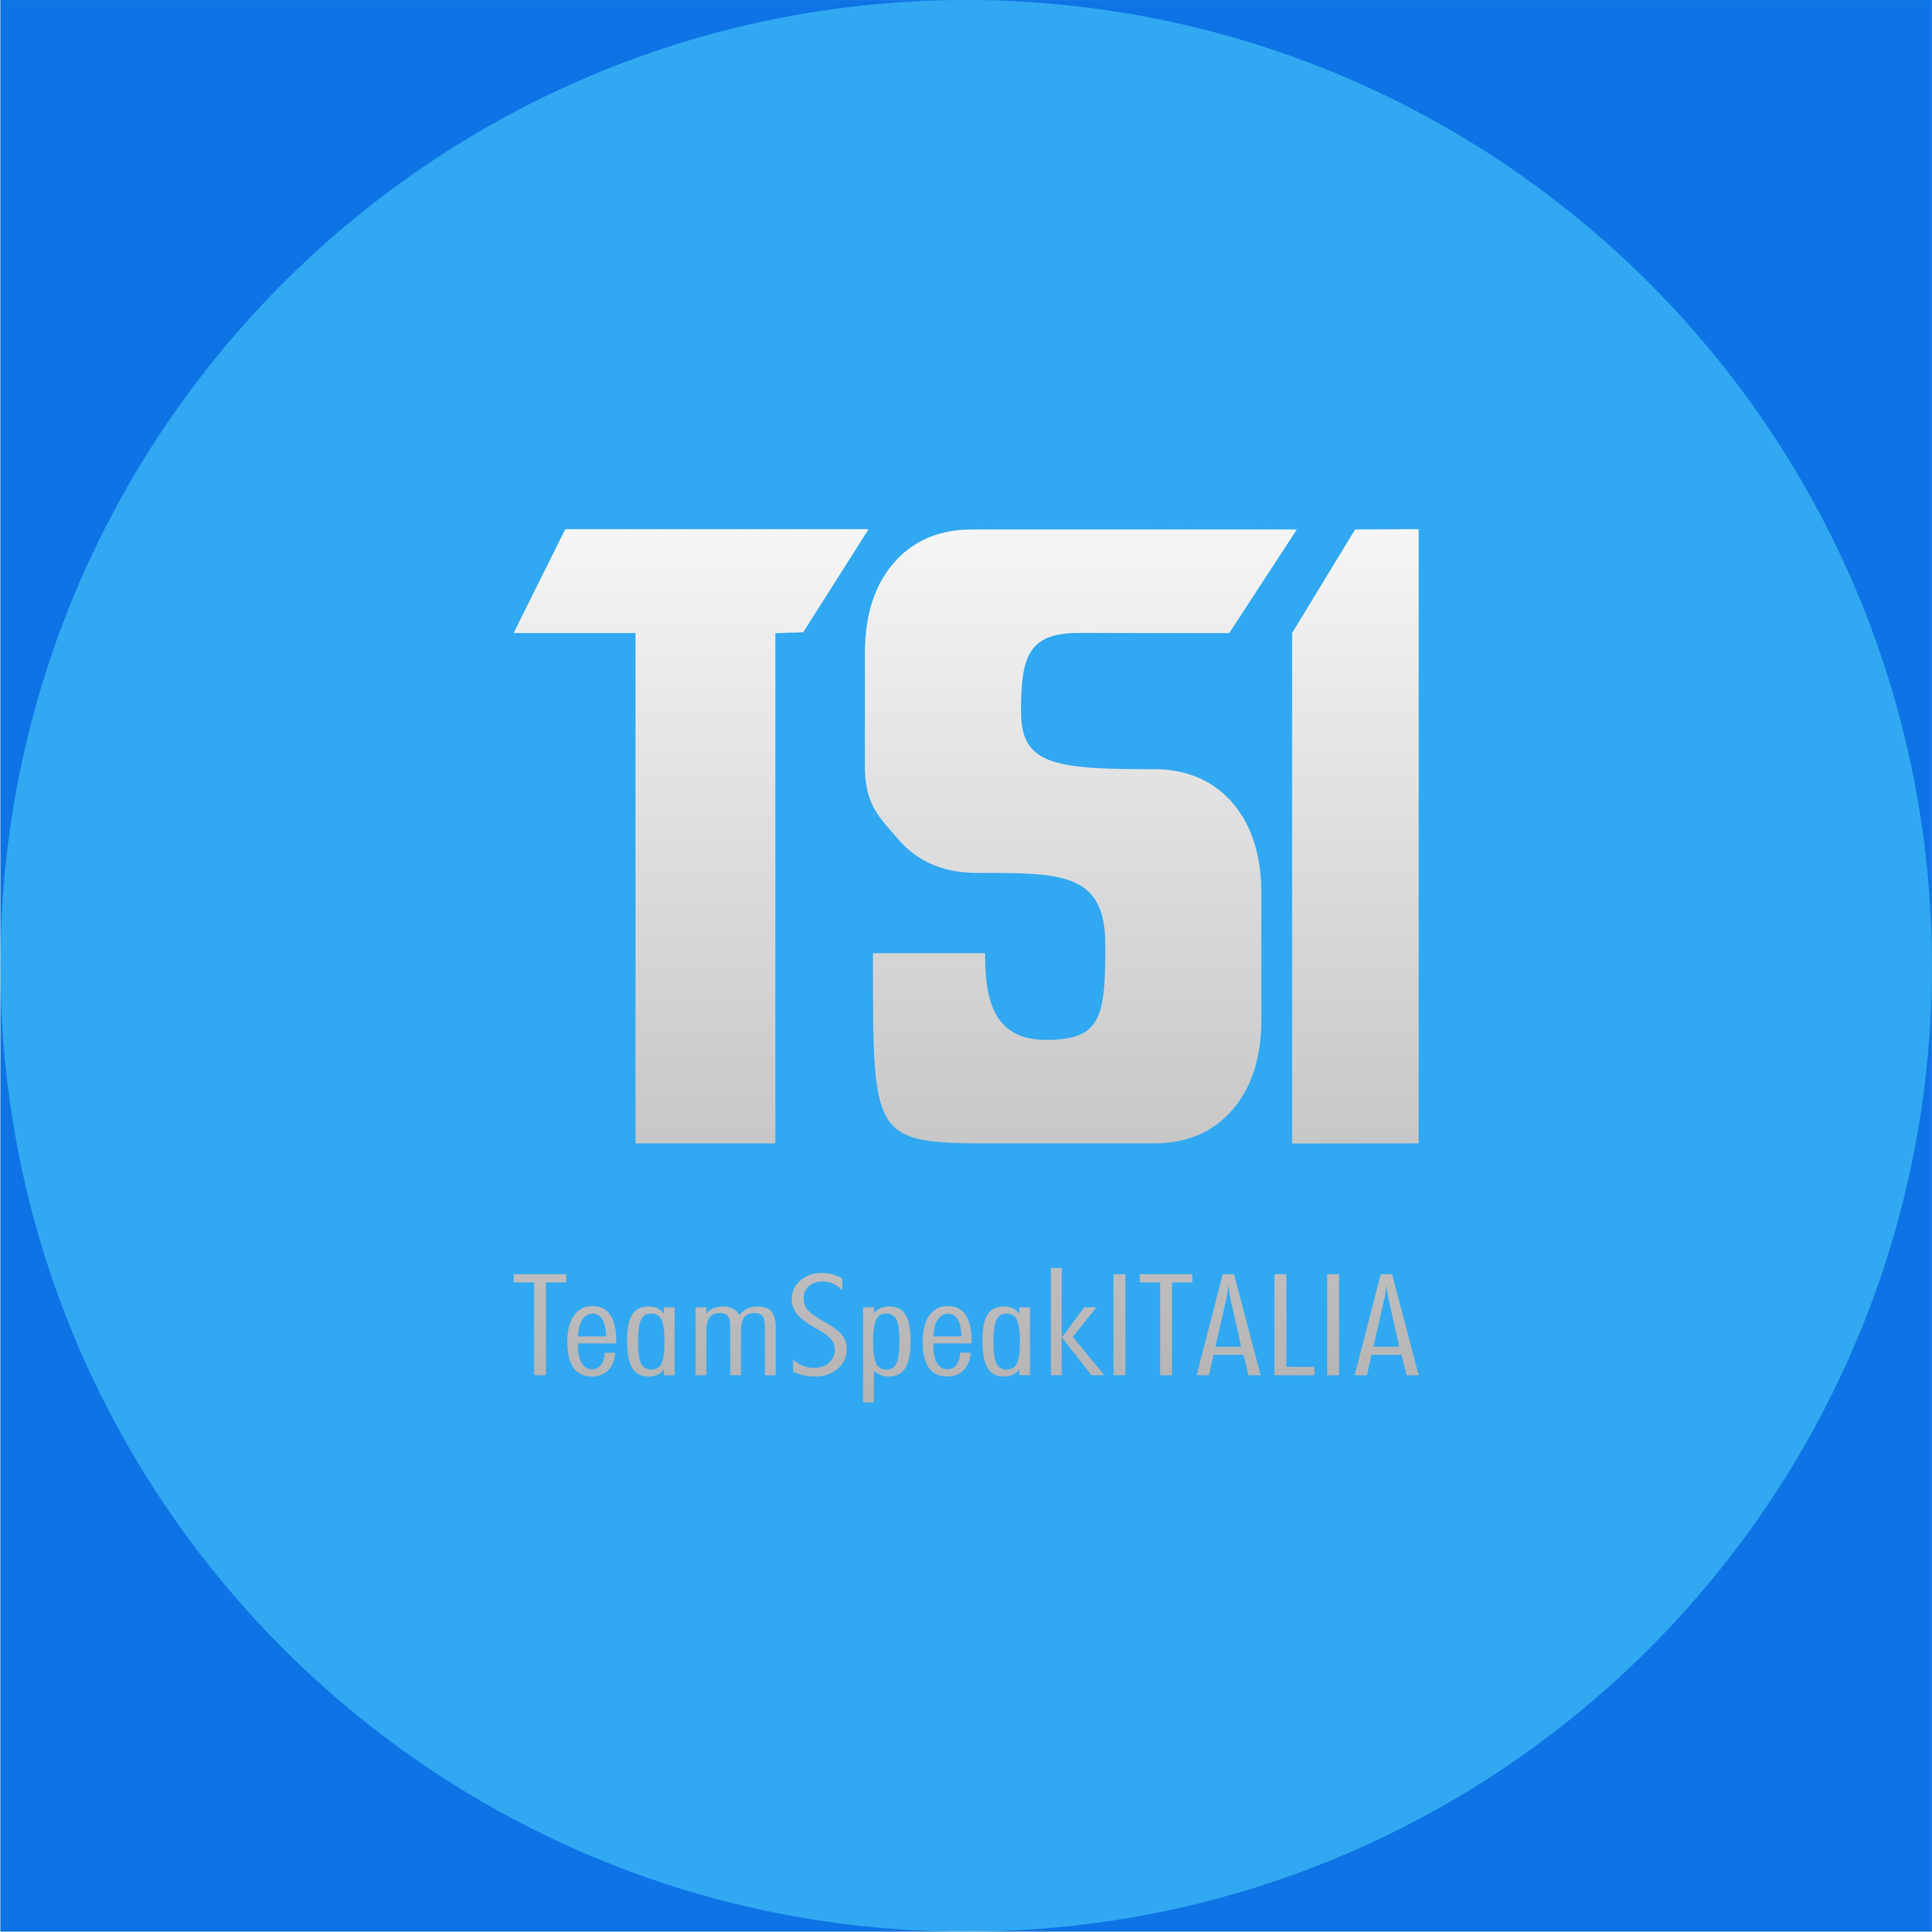 TeamSpeakITALIA.org